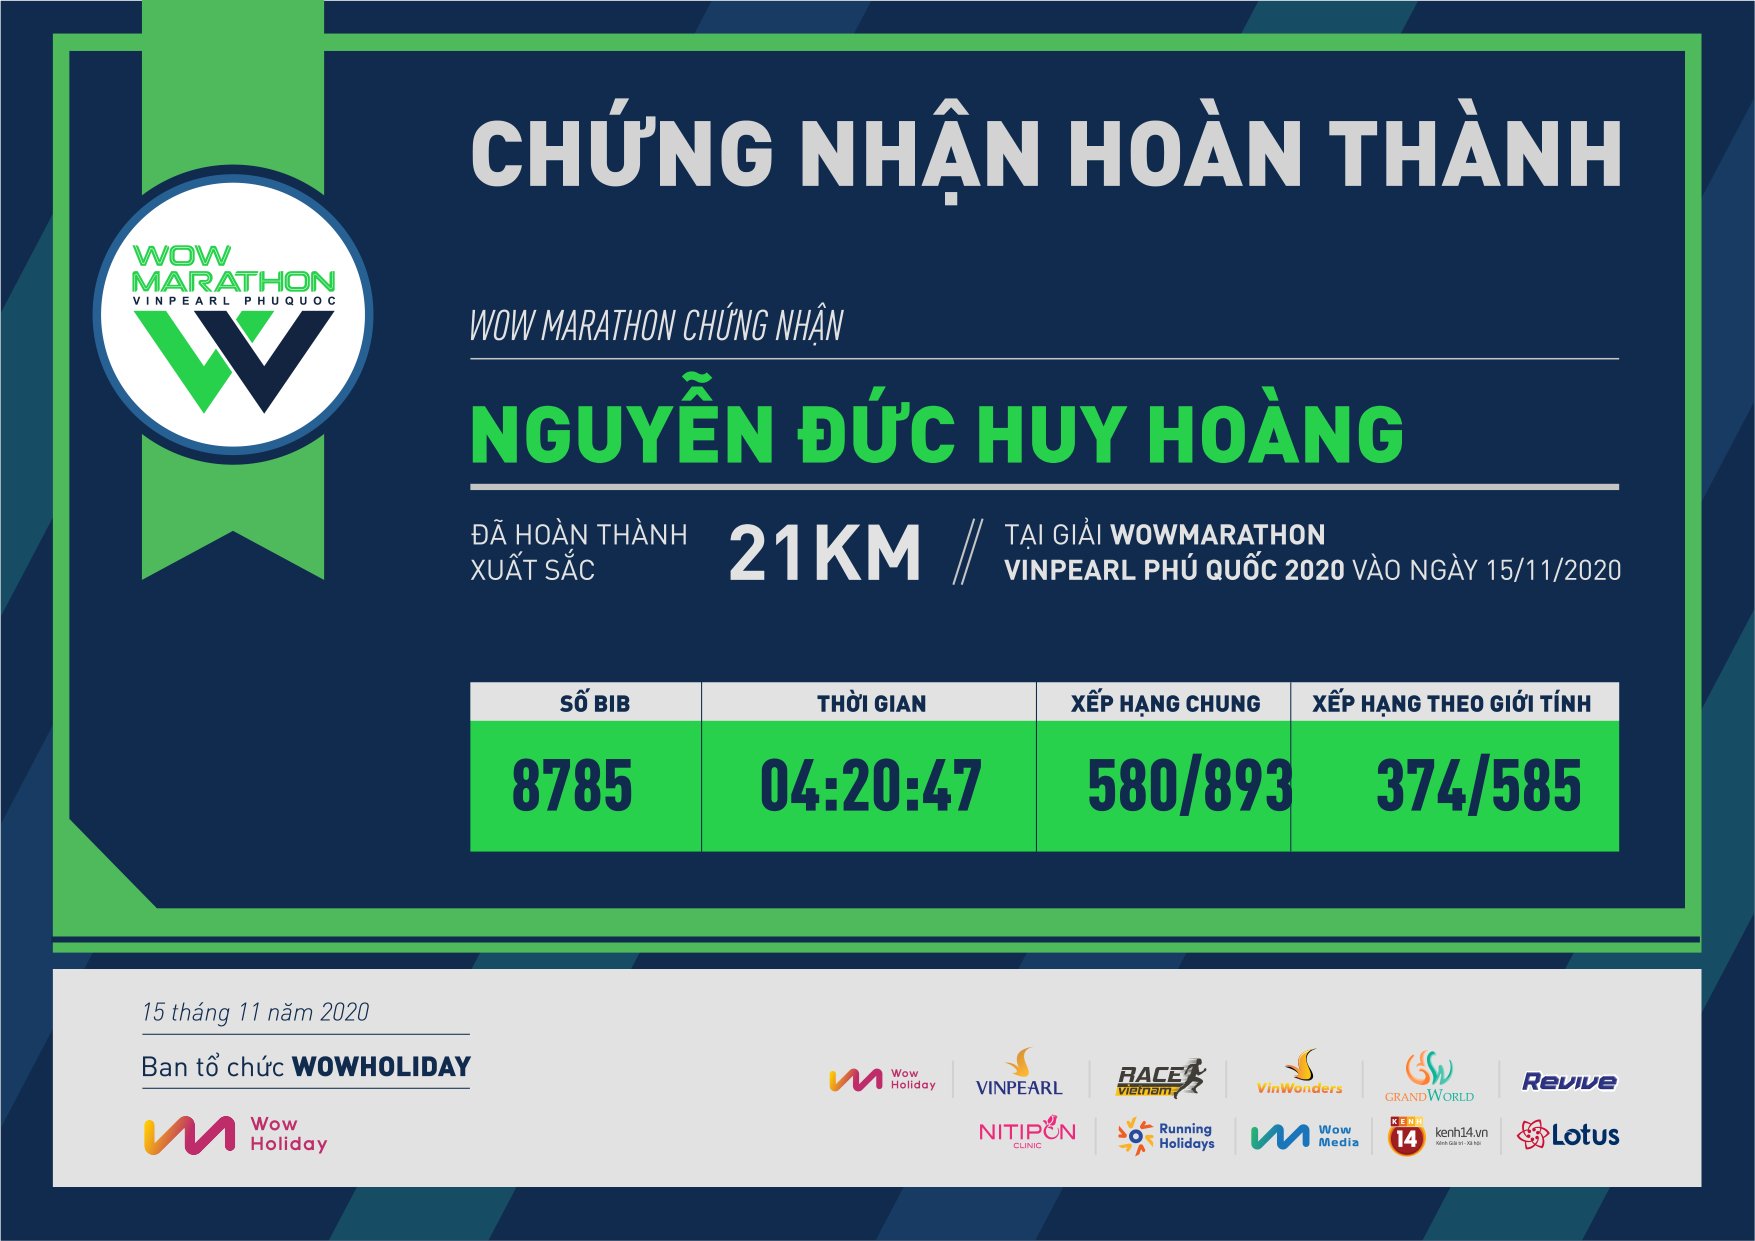 8785 - Nguyễn Đức Huy Hoàng